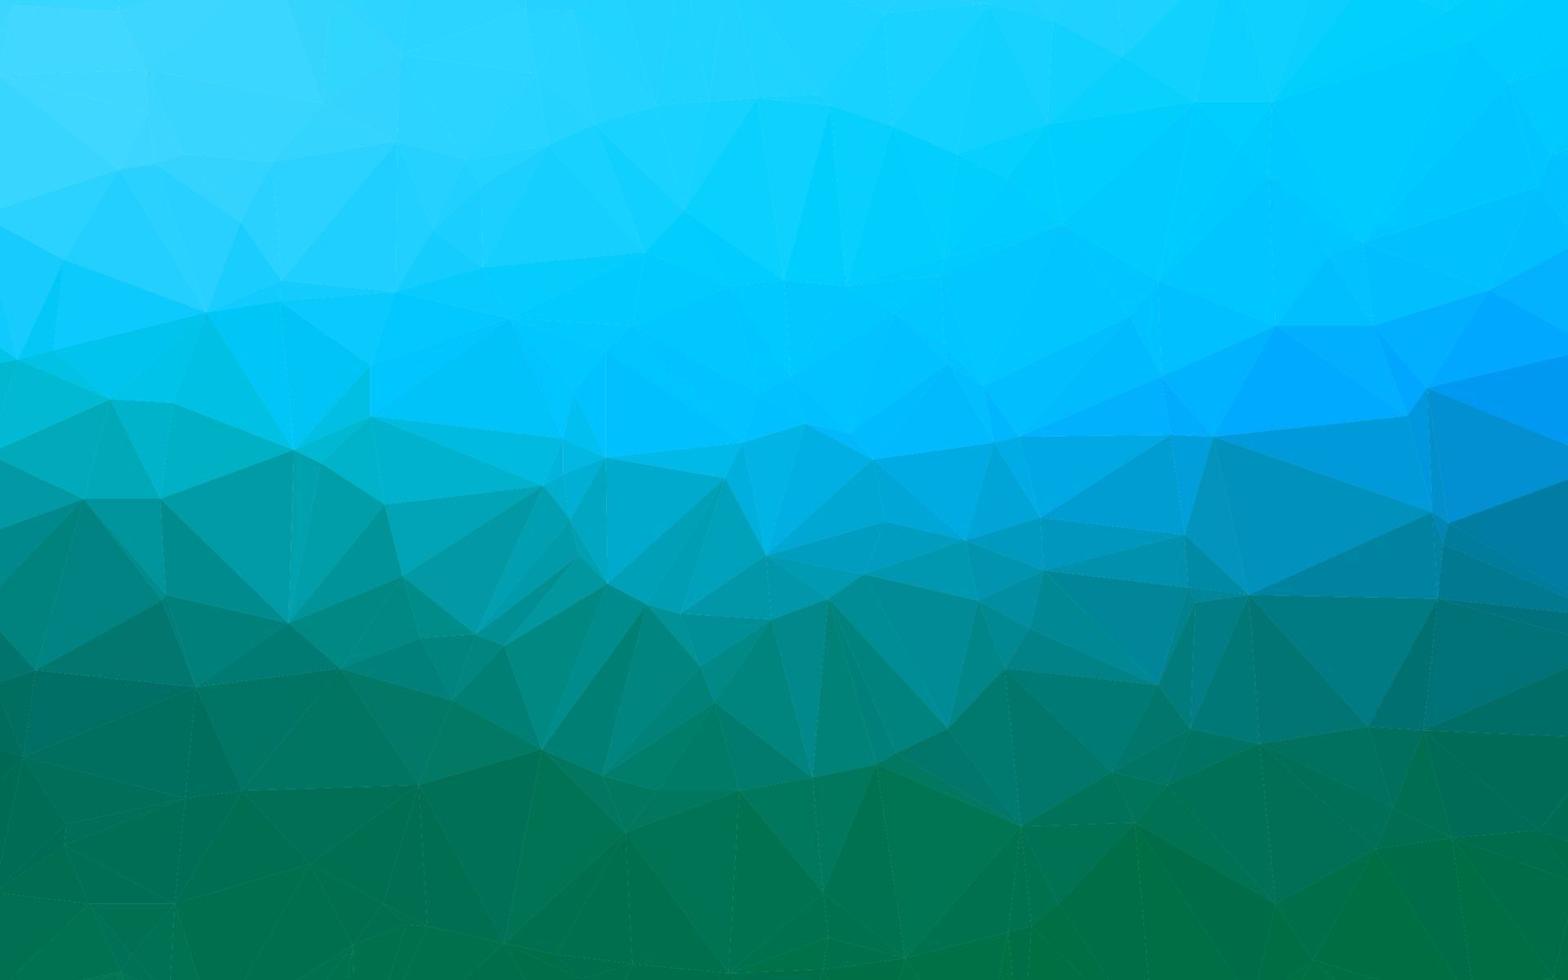 sfondo poligonale vettoriale azzurro, verde.